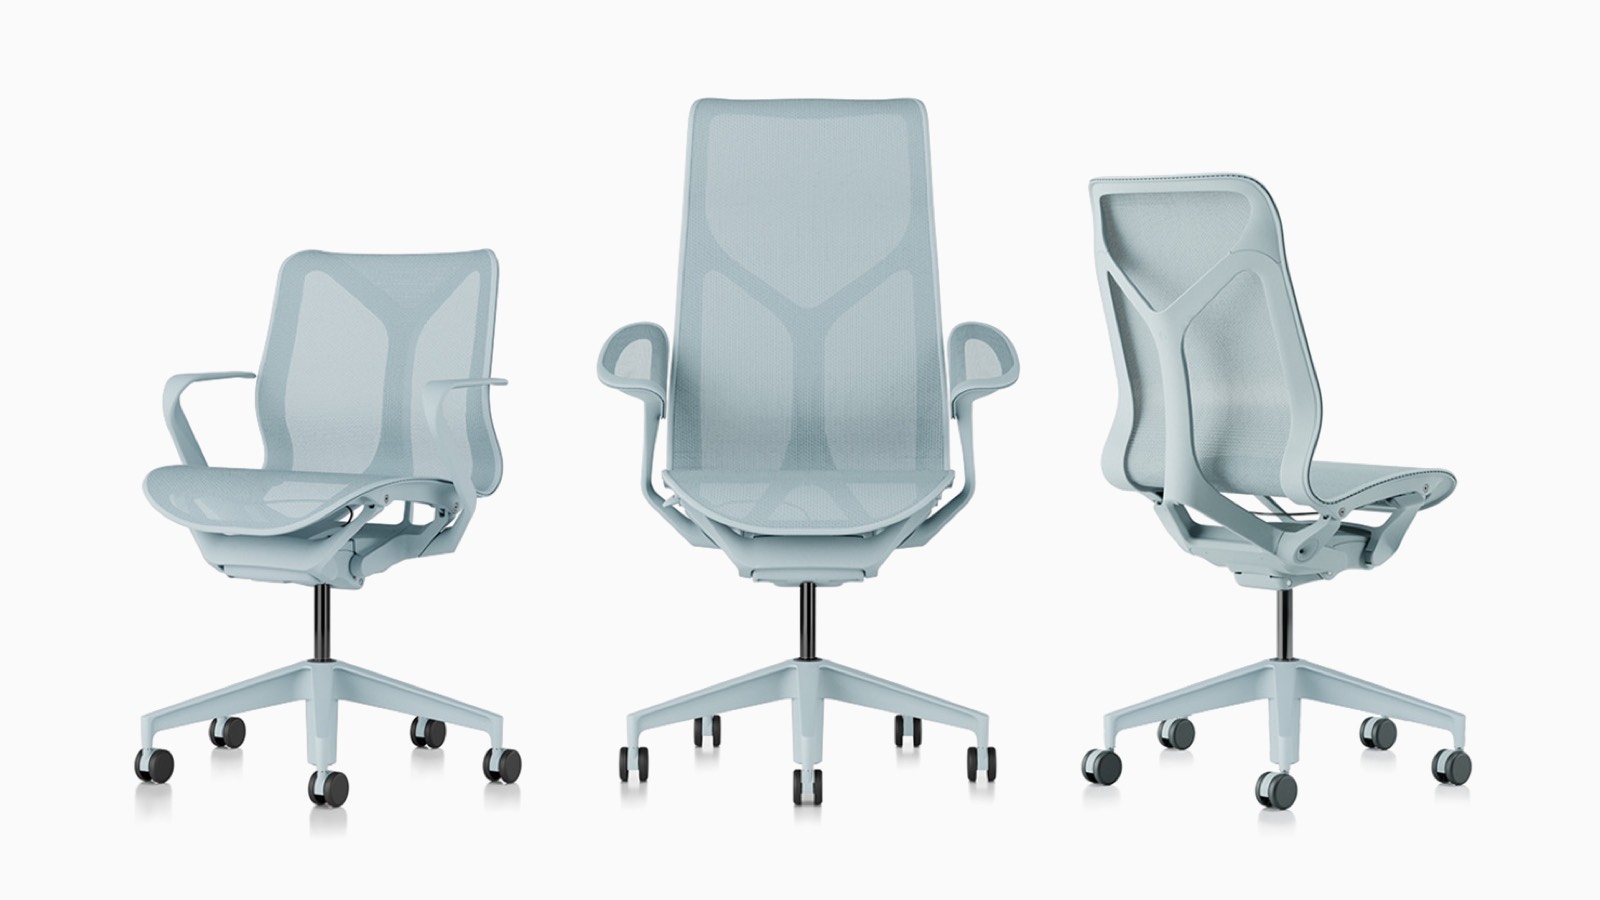 Cosm ergonomische Bürostühle mit niedriger Rückenlehne, hoher Rückenlehne und mittlerer Rückenlehne mit Federmaterialien, Untergestellen und Rahmen in Glacier hellblau.